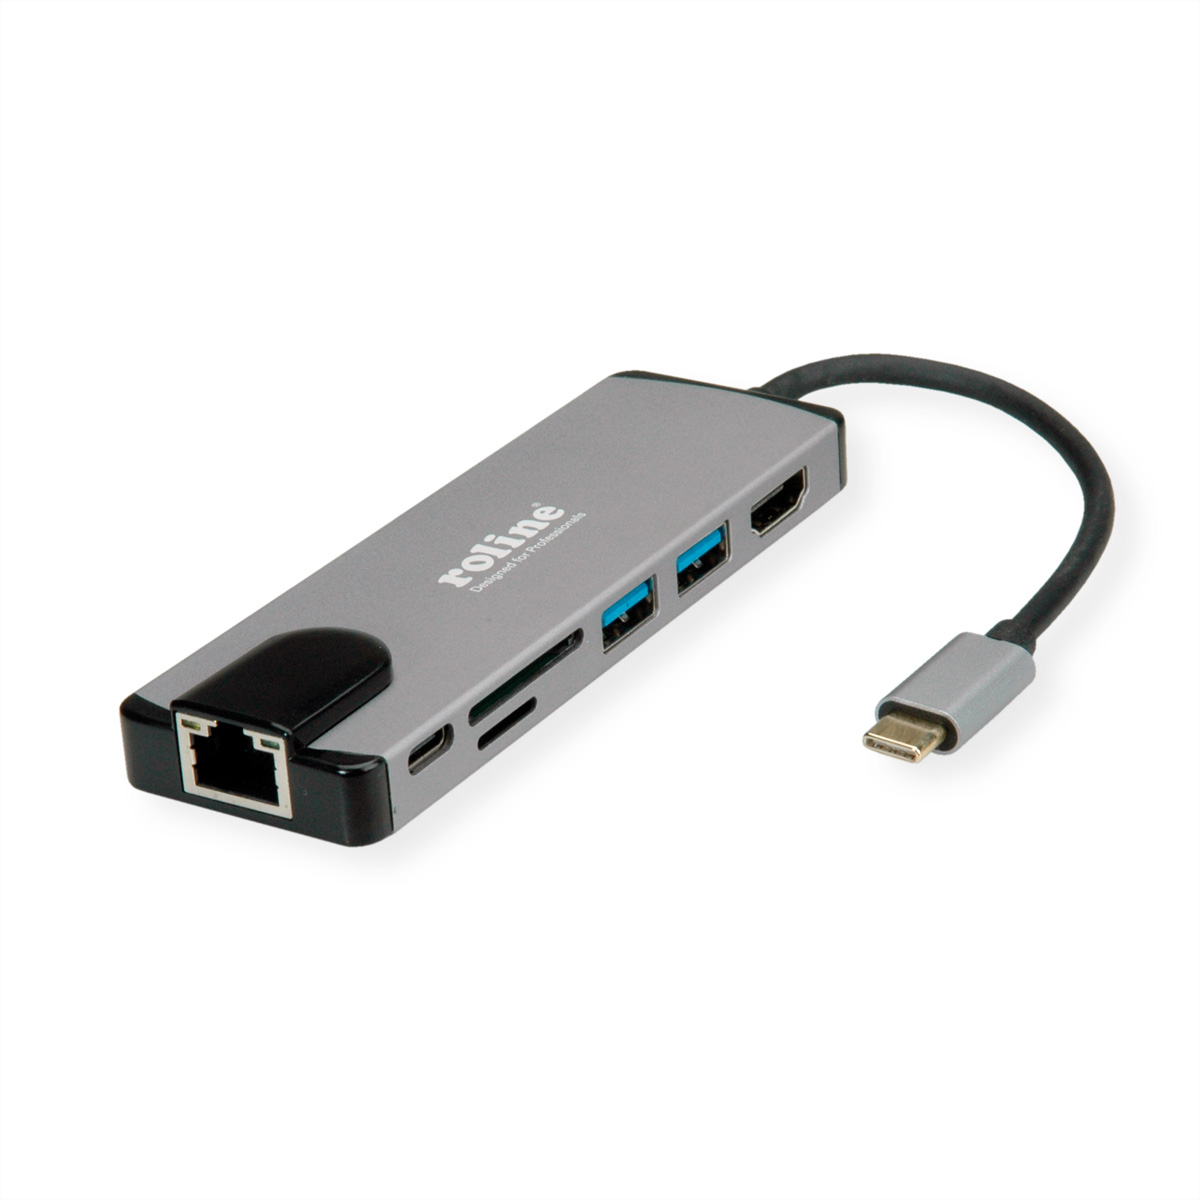 ROLINE USB 3.2 Gen Reader, 4K C Station, Dockingstation, Typ grau Multiport HDMI, Card LAN 2 Docking